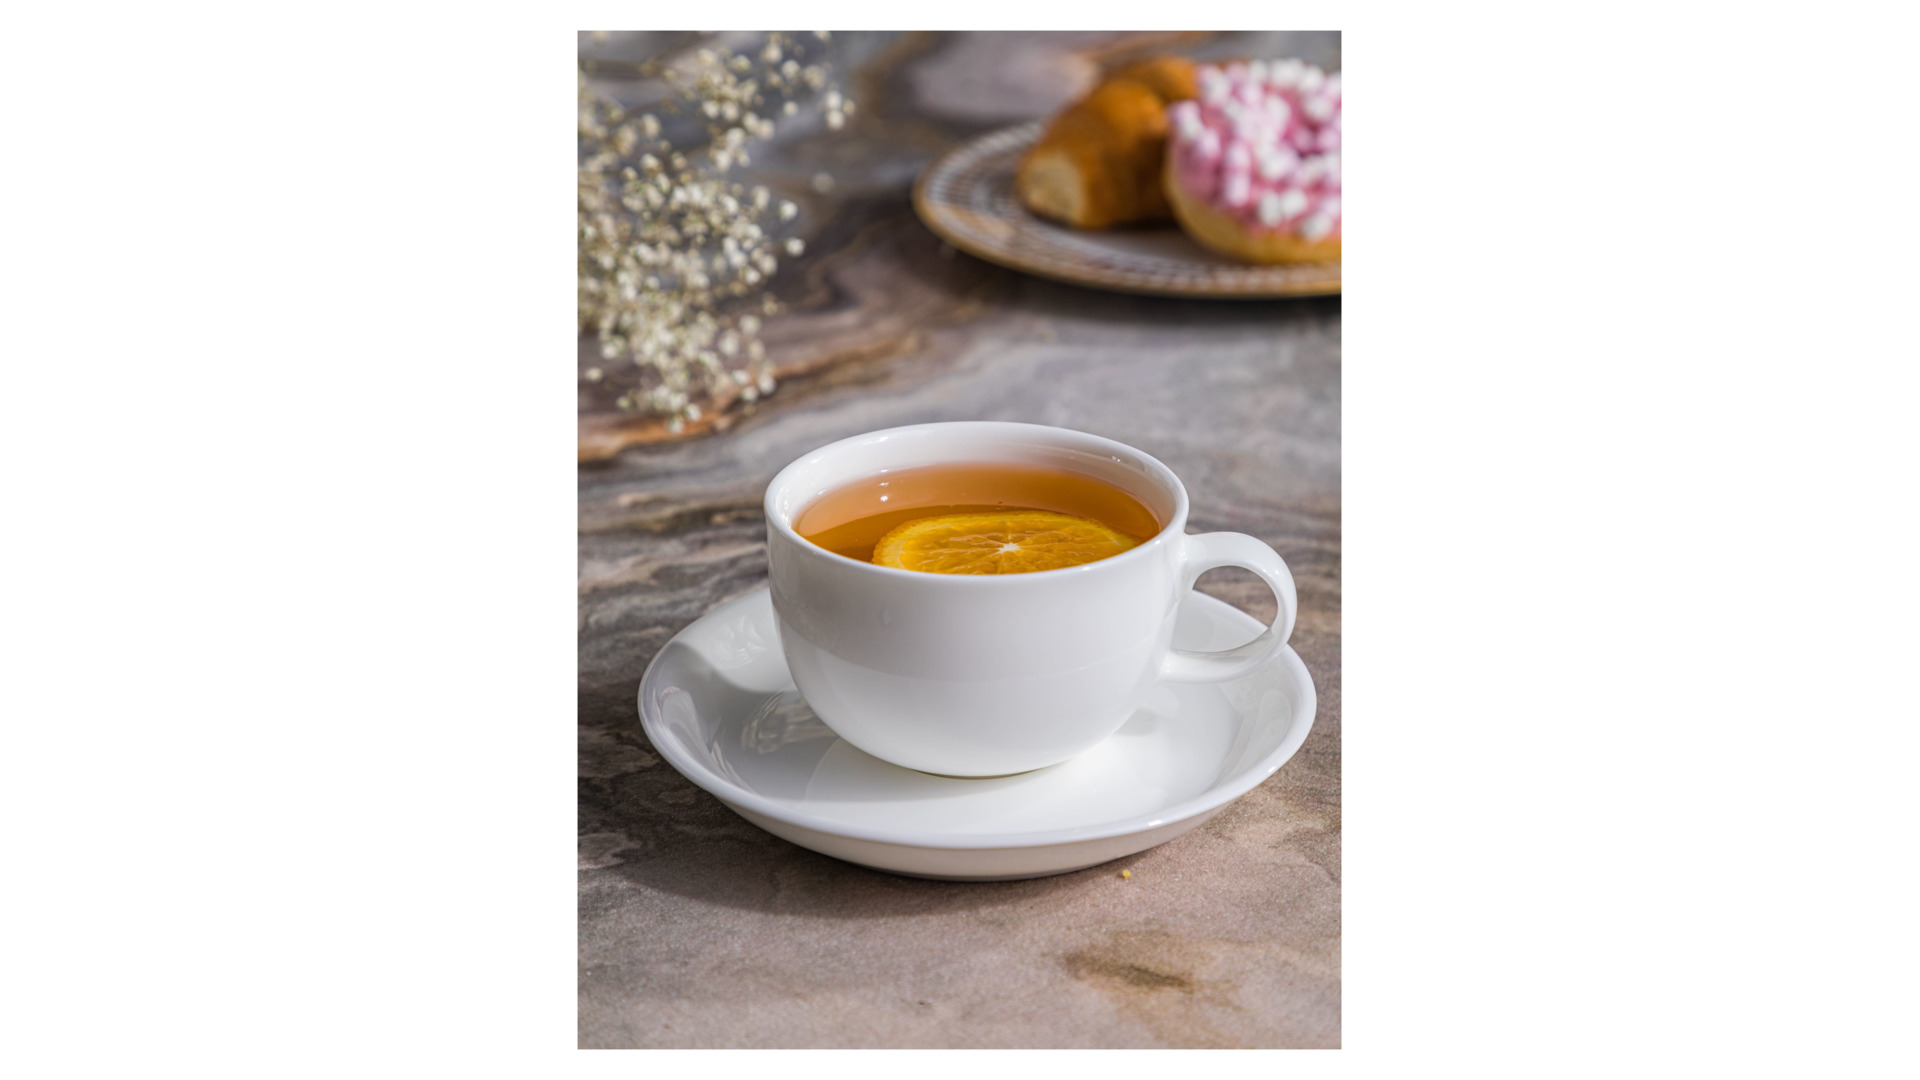 Чашка чайная с блюдцем Mix&Match Элемент 250 мл, фарфор костяной